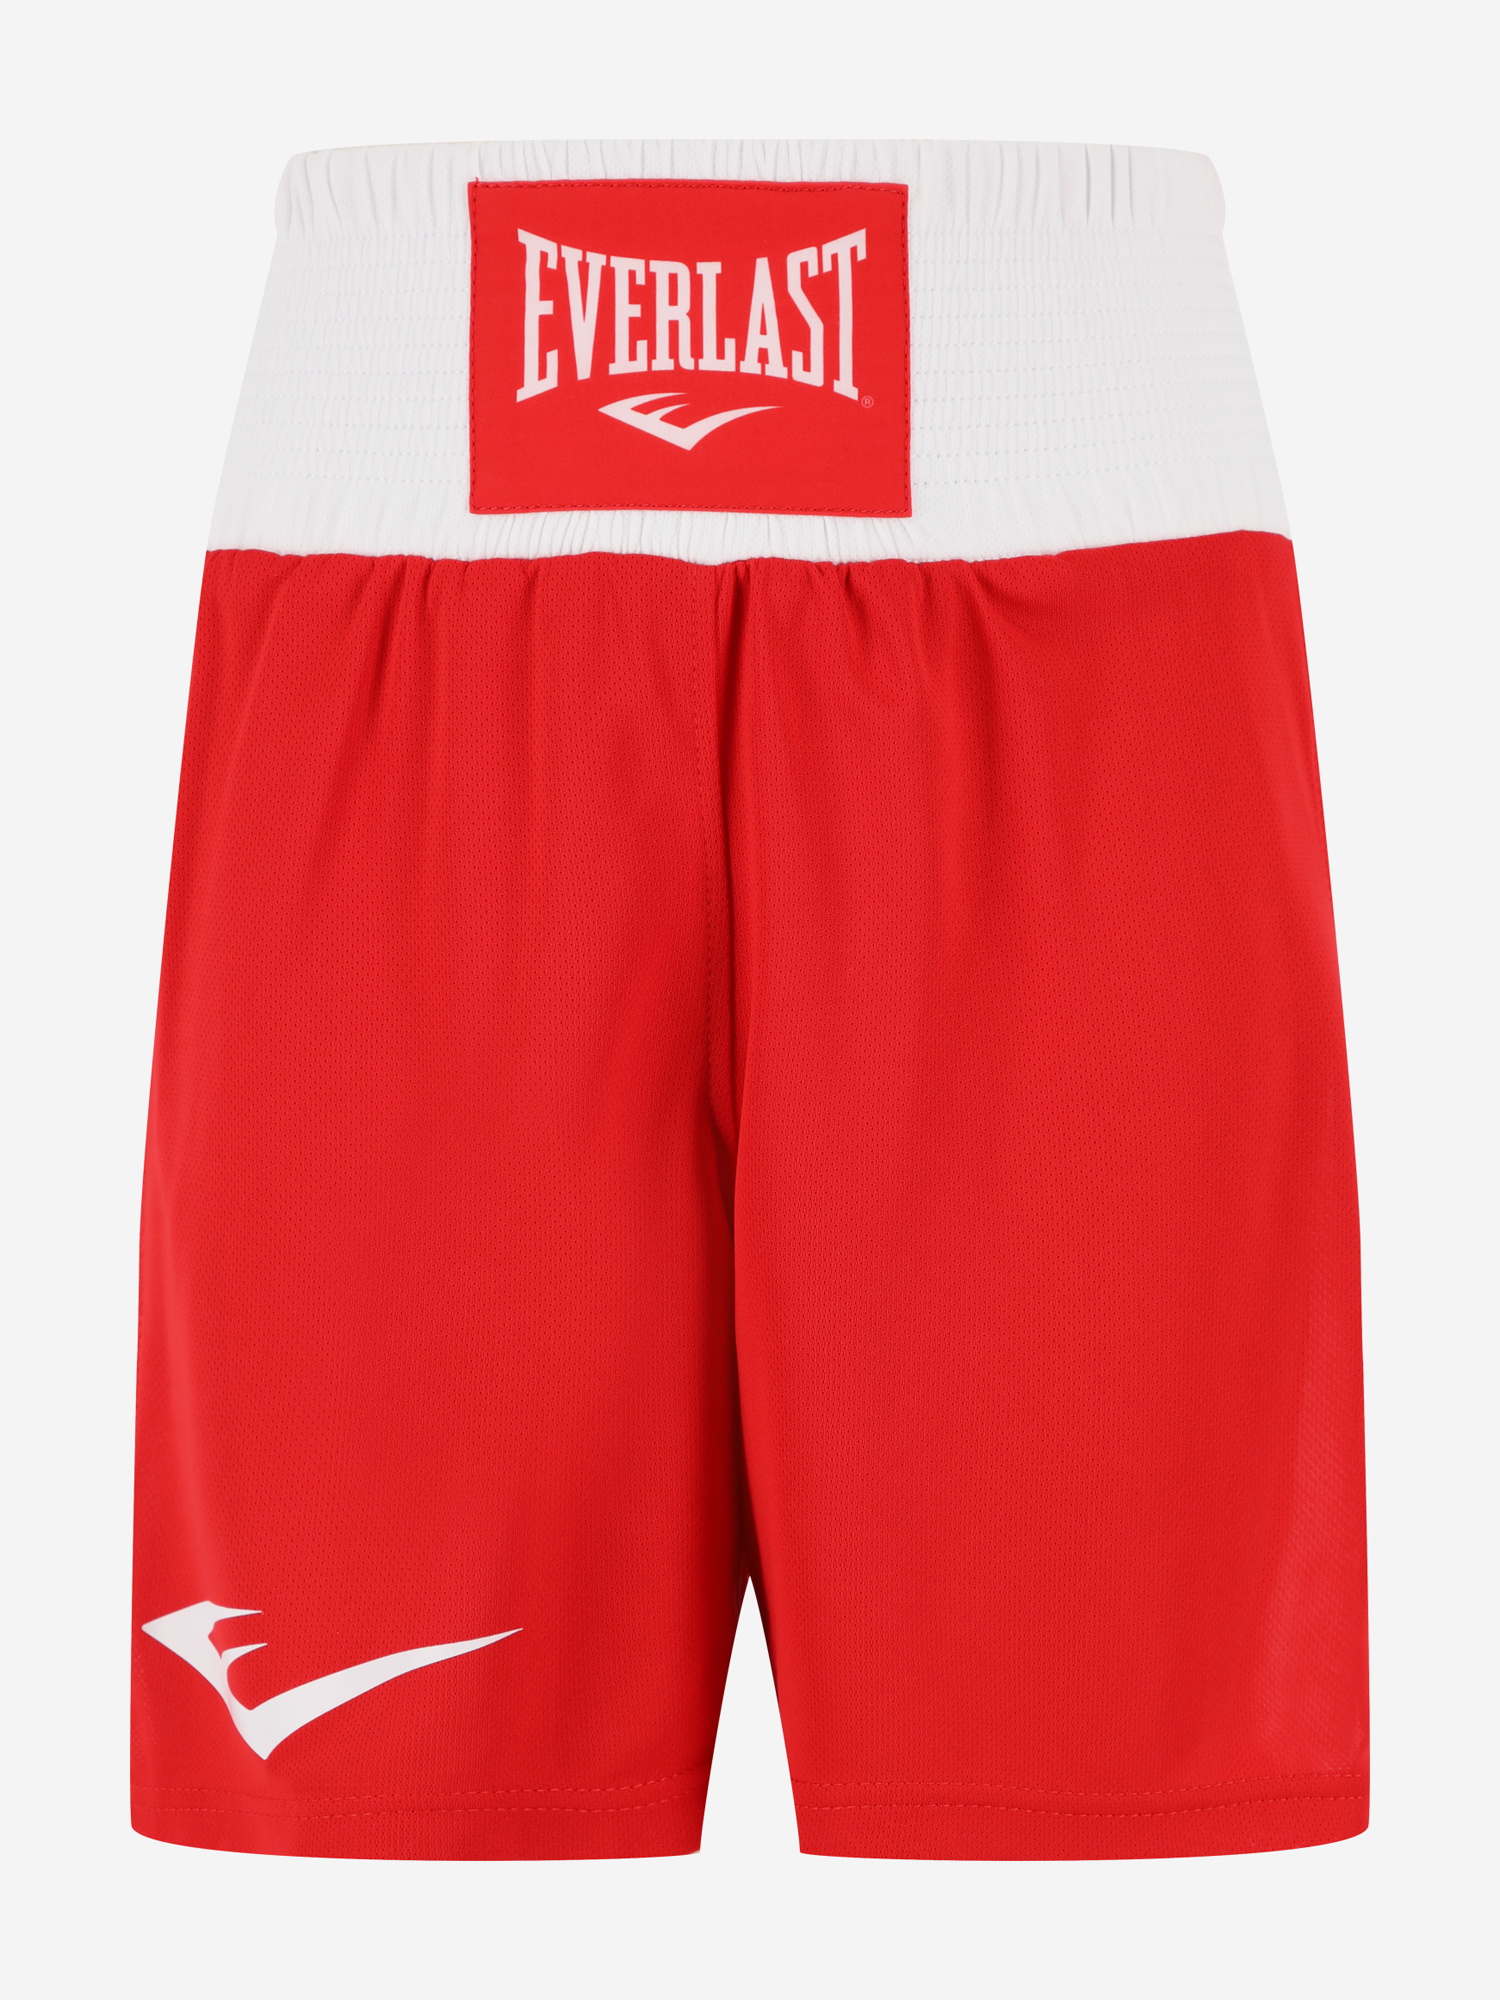 Шорты для бокса детские Everlast Elite, Красный шорты для бокса детские everlast elite красный